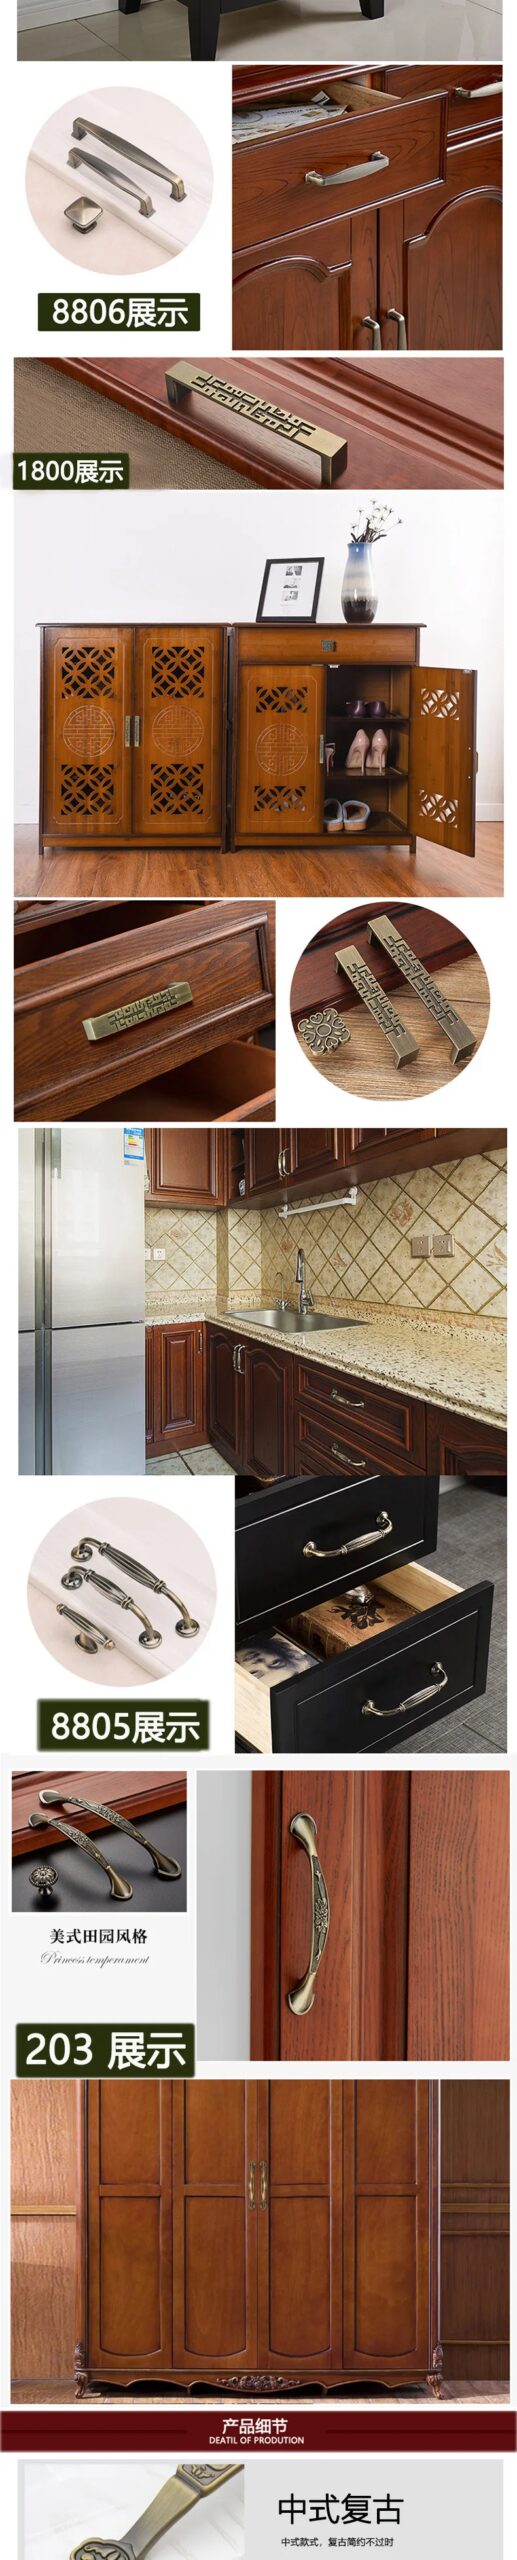 128/96/64mm Bronze Door Knobs Kitchen Cabinet Handles Furniture Handles Cupboard Handles  Antique Knobs Vintage Metal